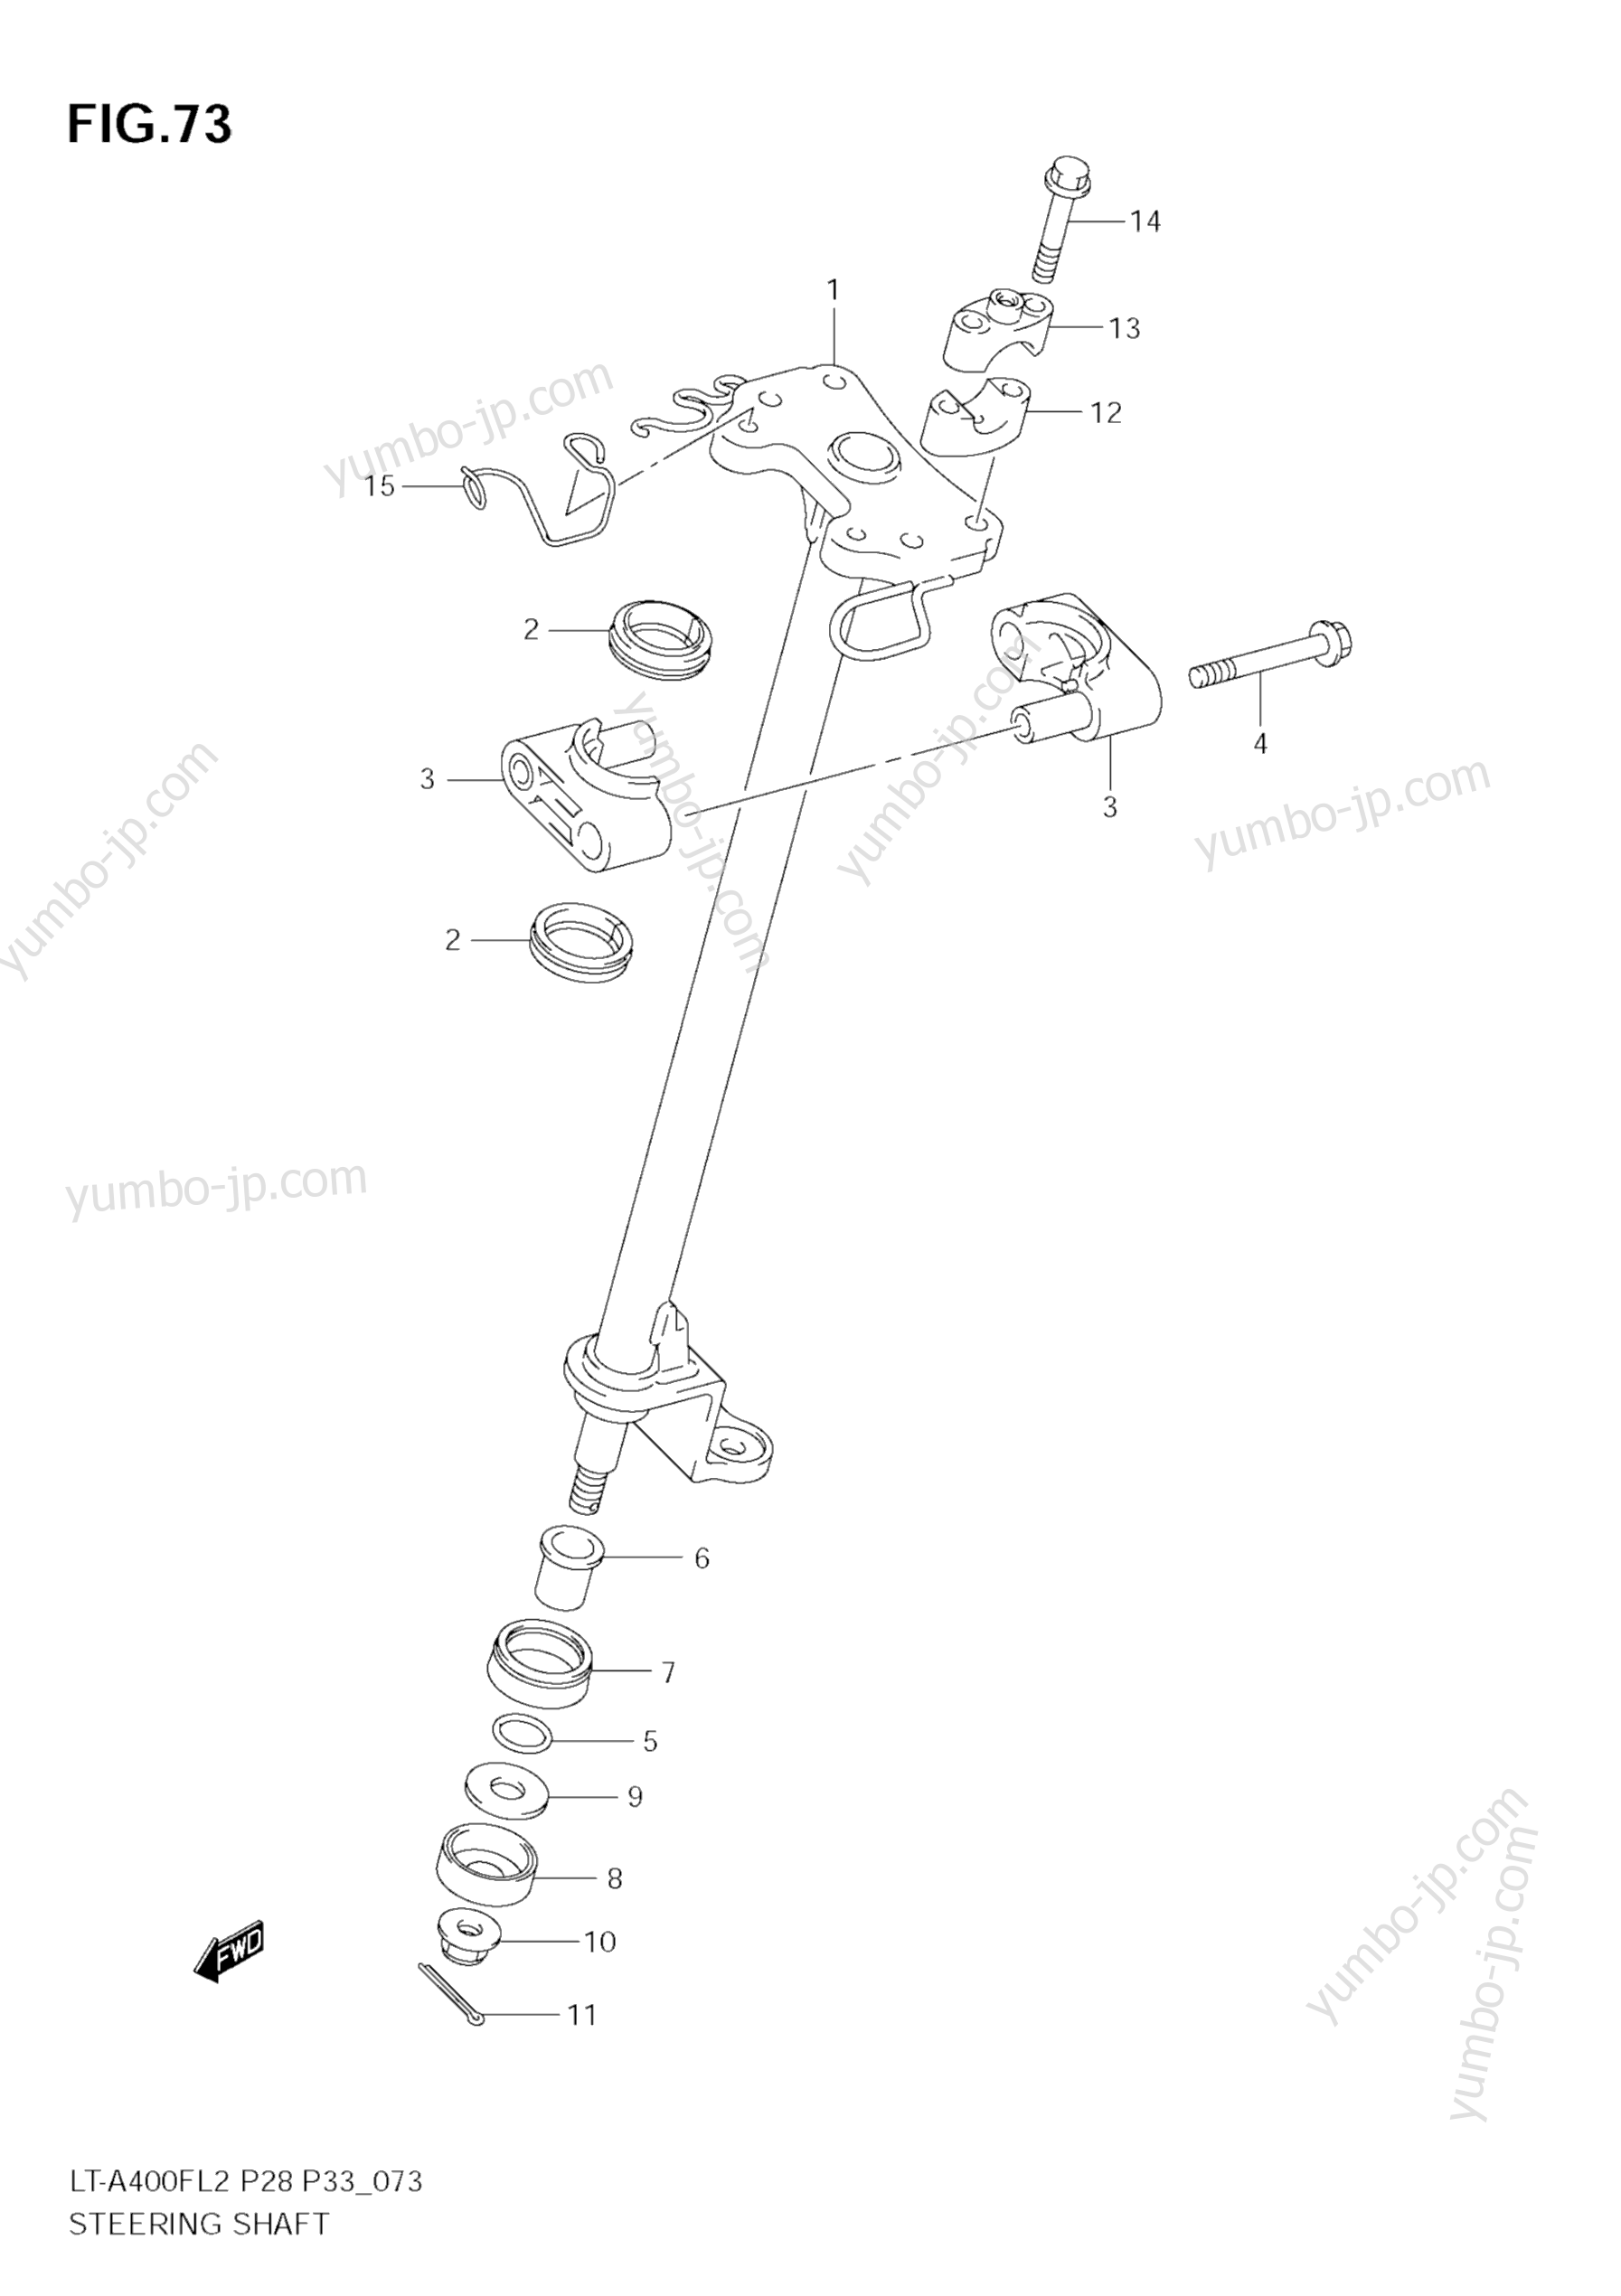 STEERING SHAFT для квадроциклов SUZUKI KingQuad (LT-A400F) 2012 г.